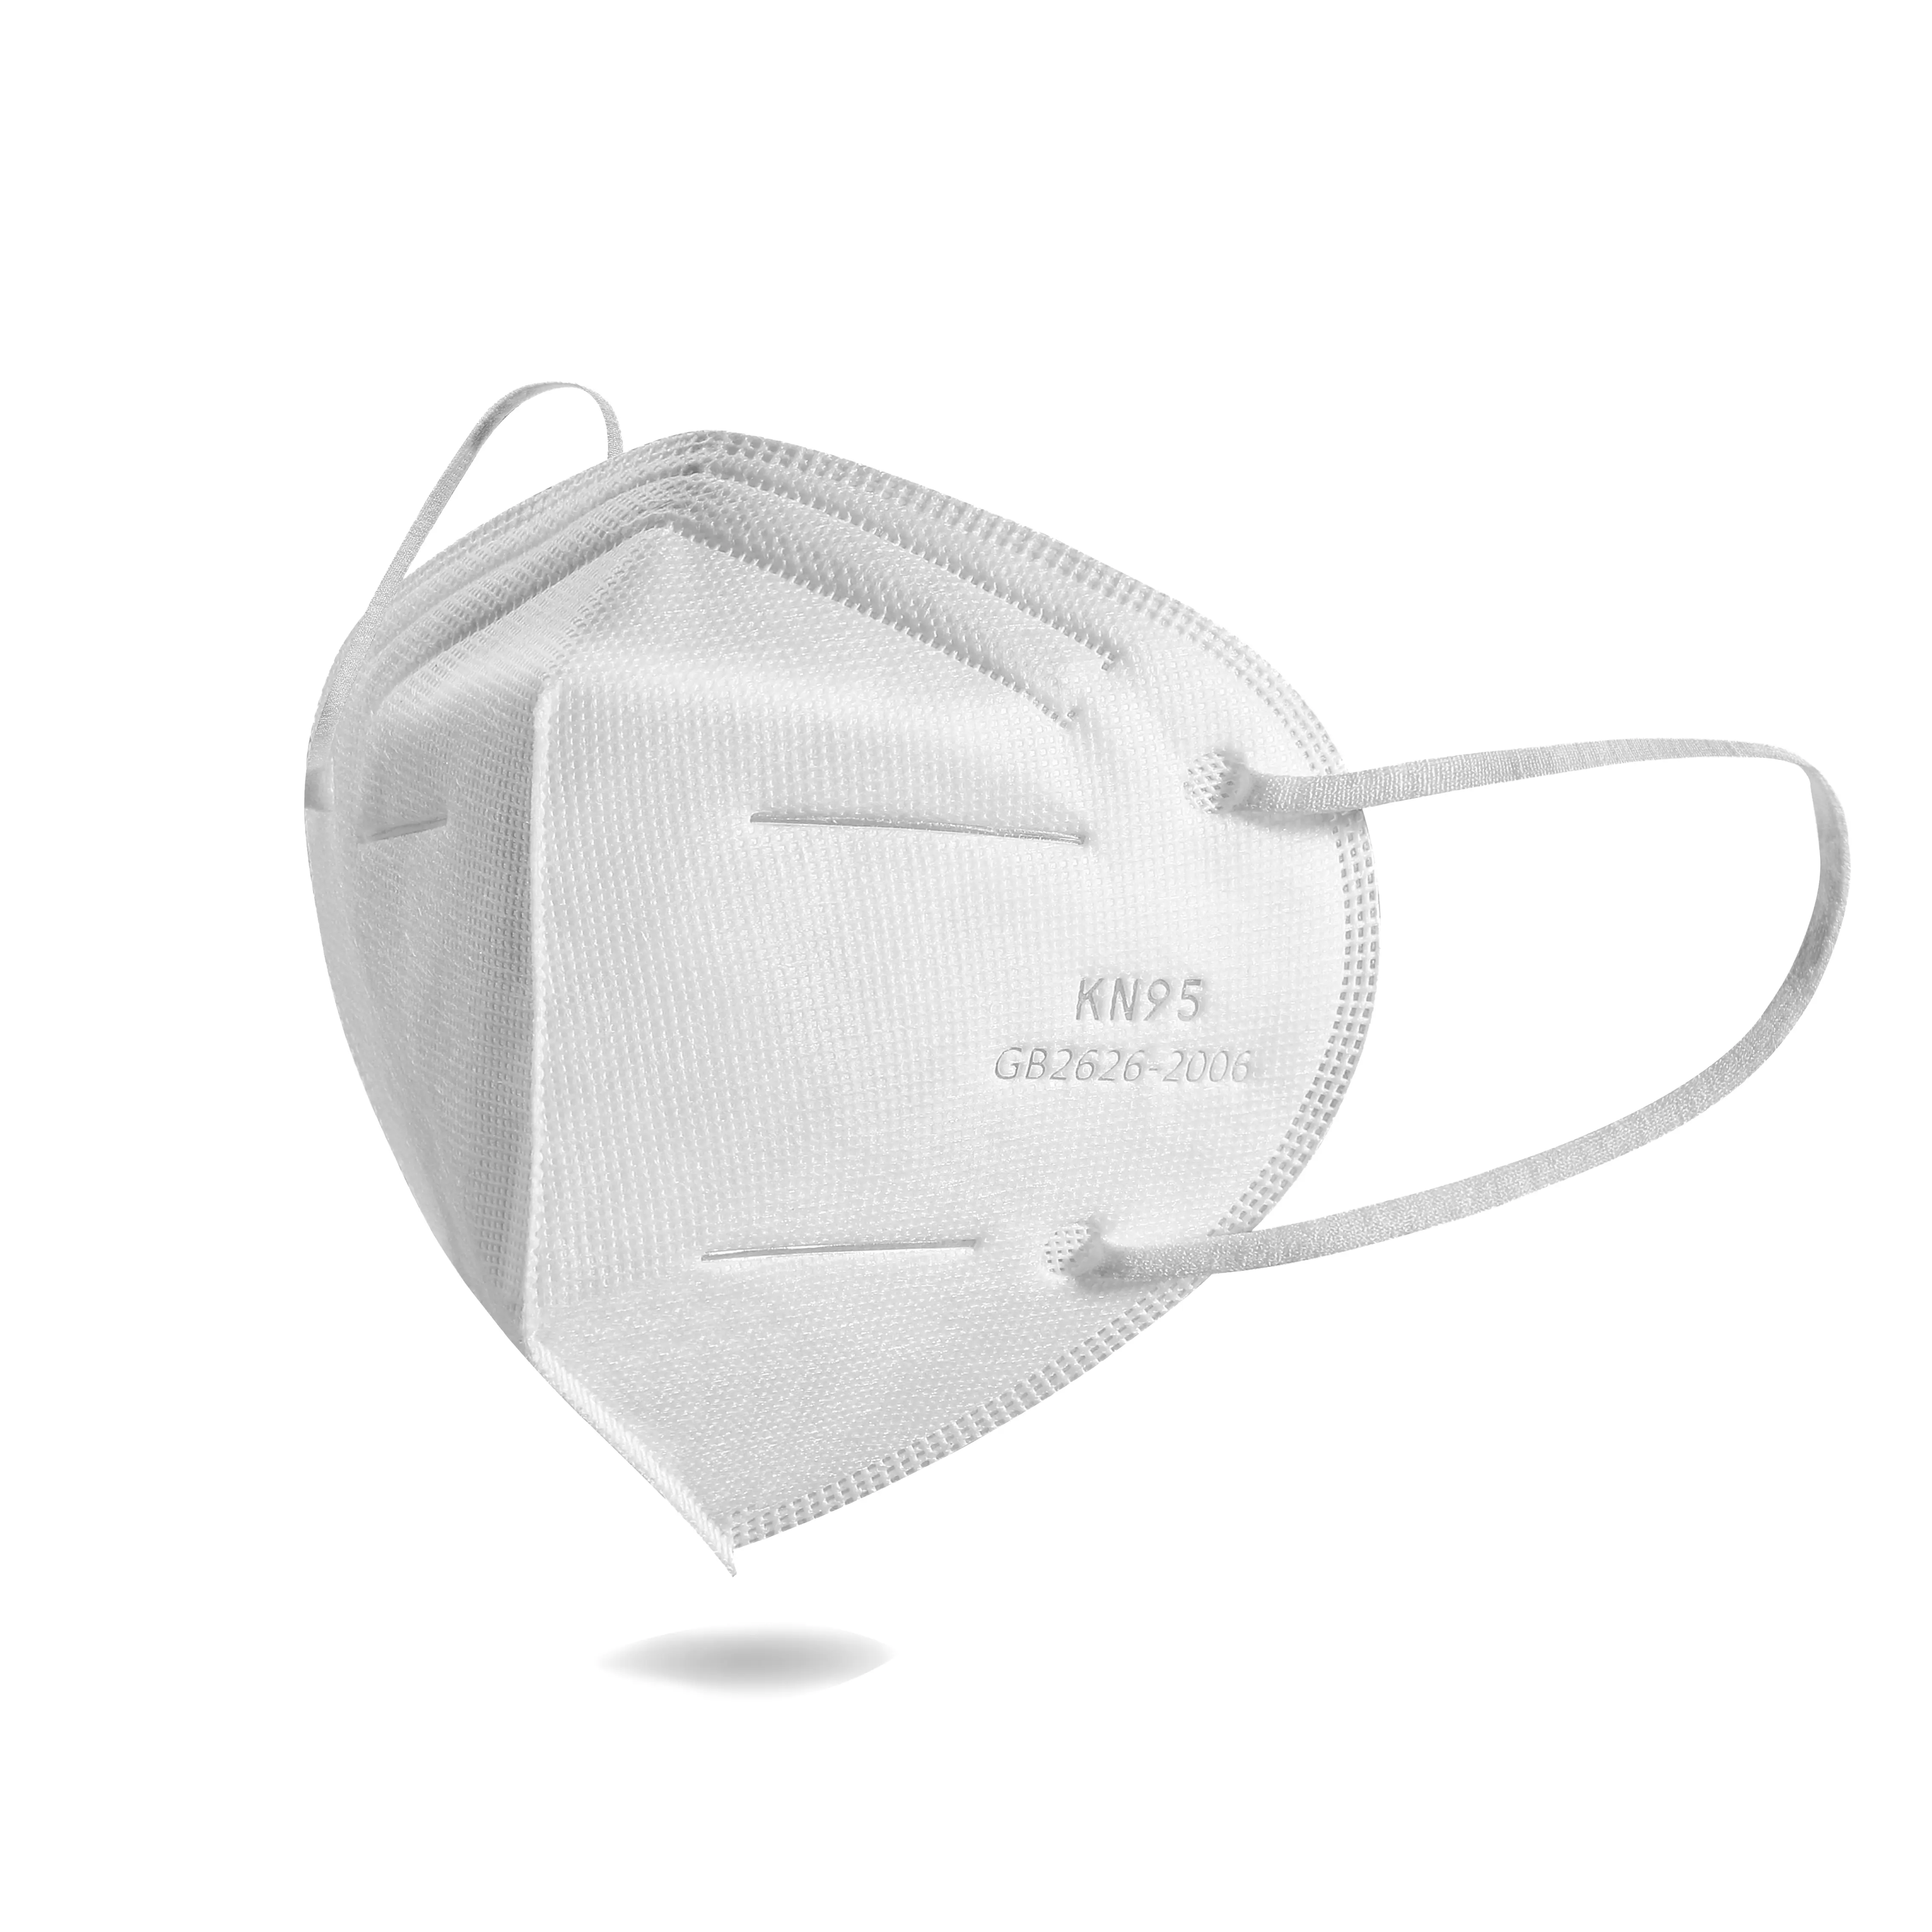 Mascarilla facial protectora KN95, máscara de 5 capas en blanco, lista de GB 2626-2006, color blanco